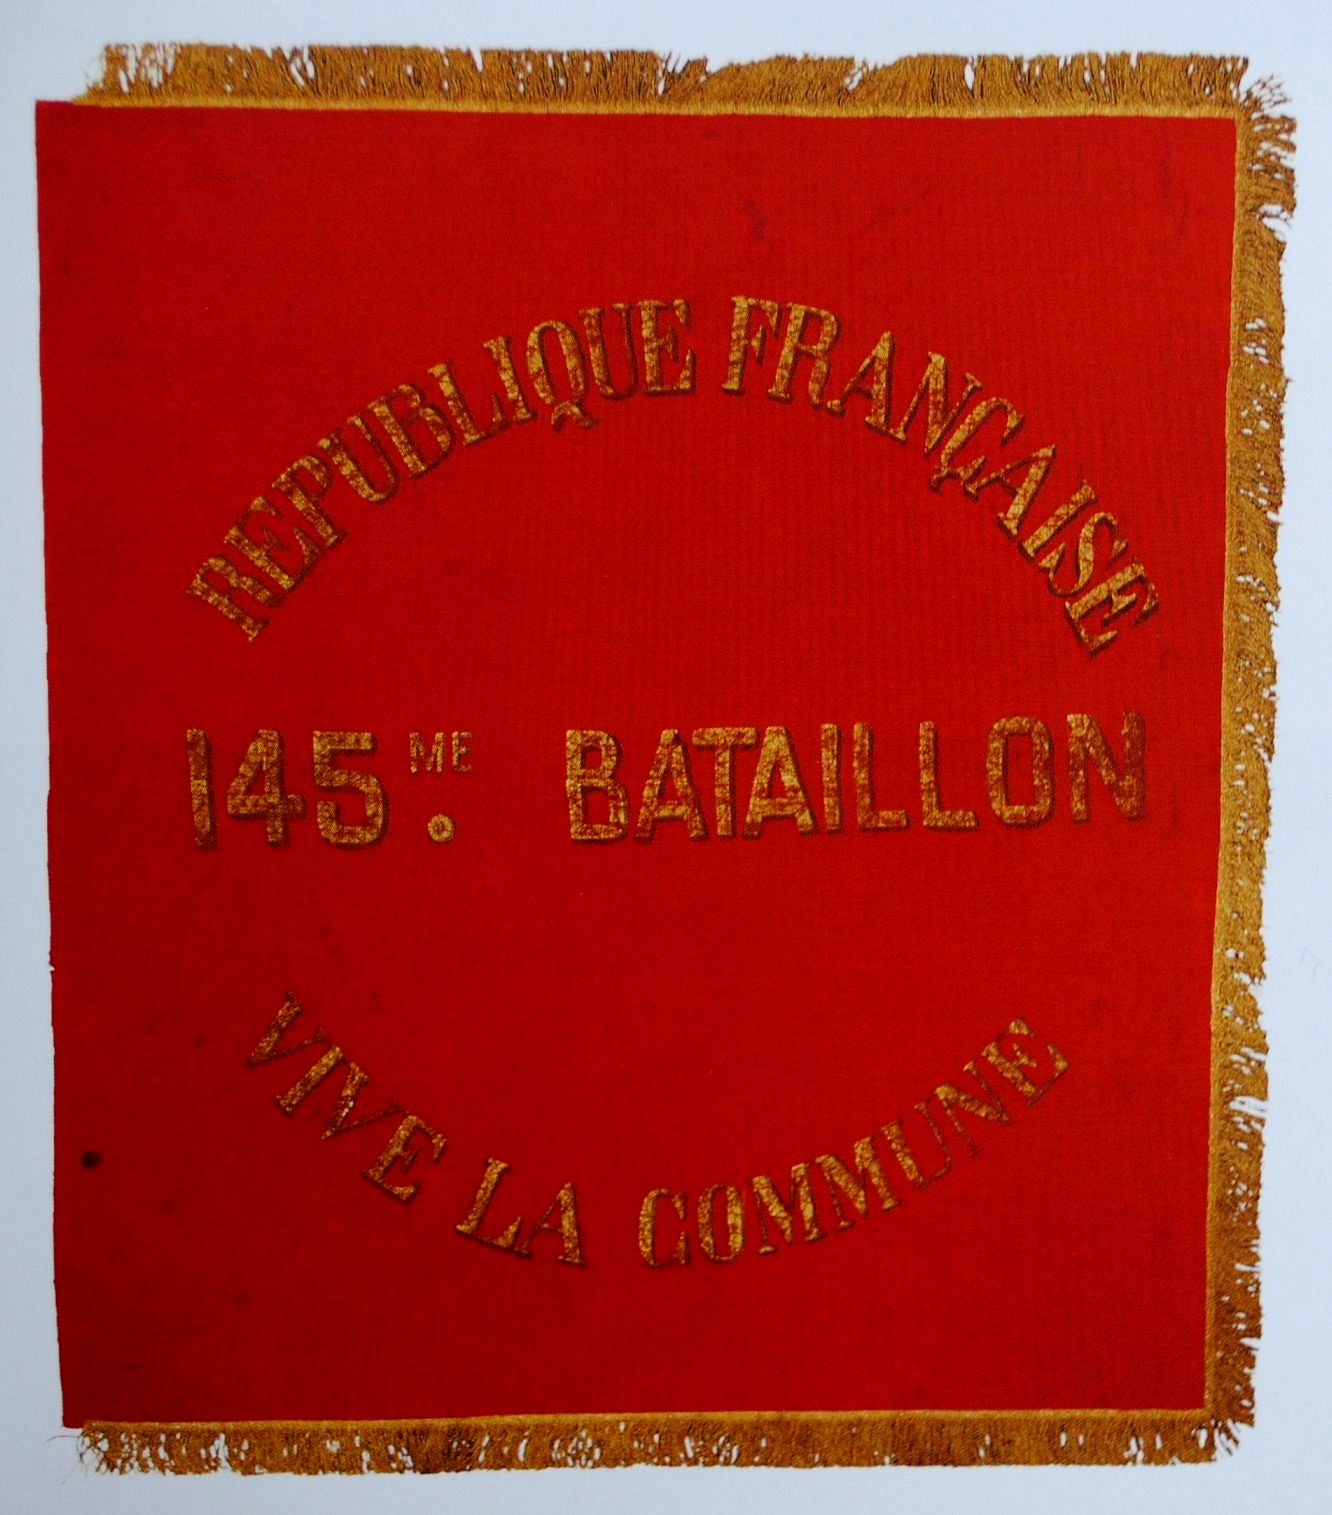 Drapeau de la Commune de Paris 1871 - 145e bataillon de la Garde nationale fédérée. (Archives cantonales vaudoises - Suisse)